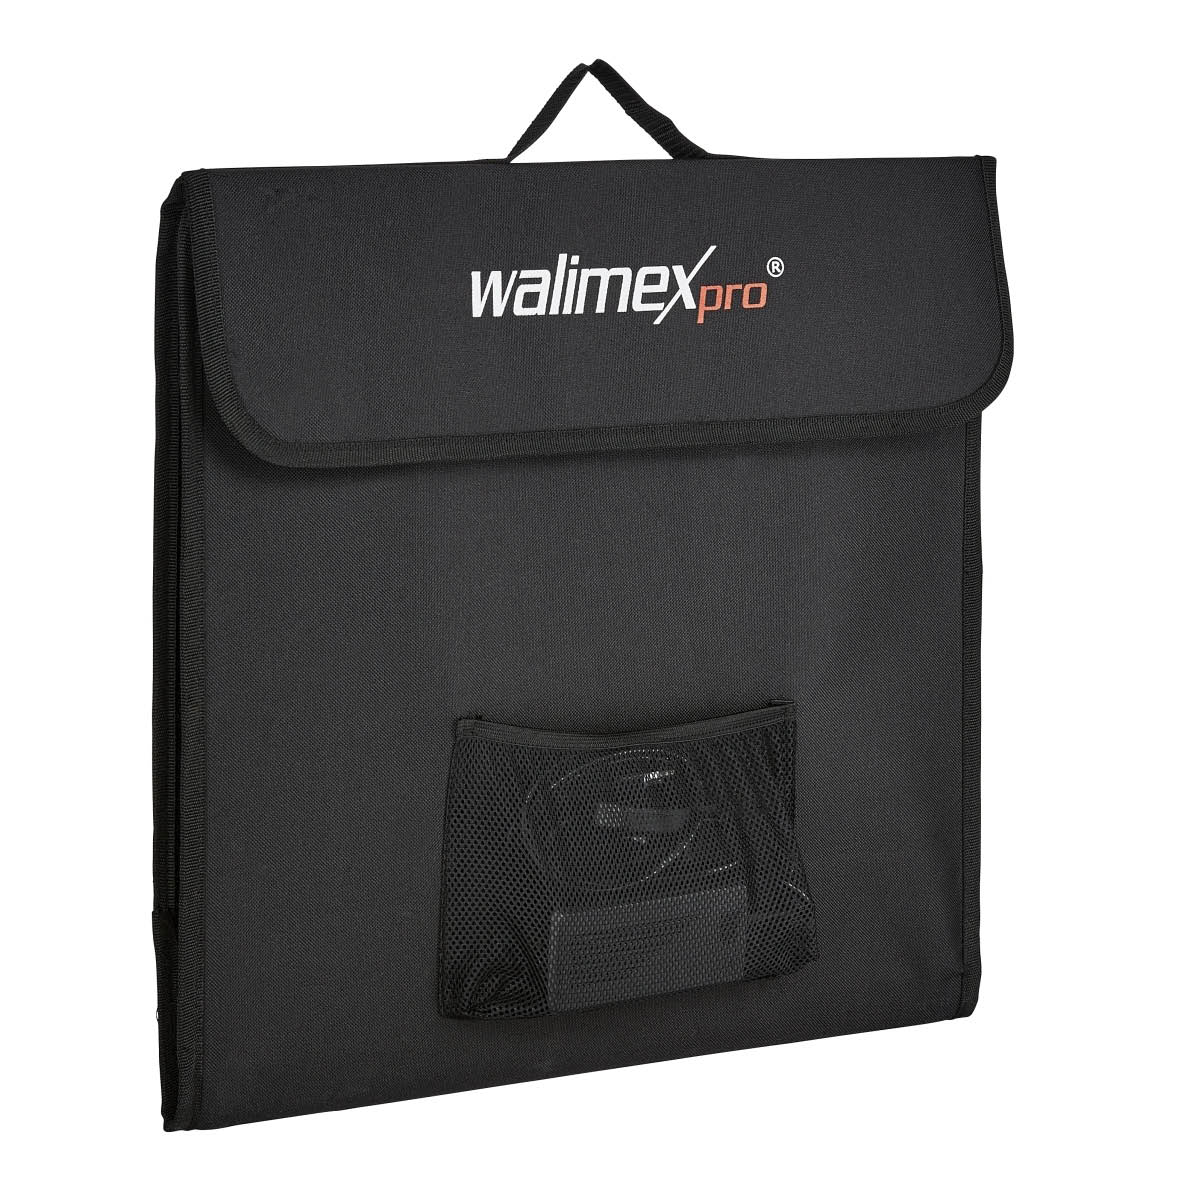 Walimex pro faltbarer LED Aufnahmewürfel 40 x 40 cm